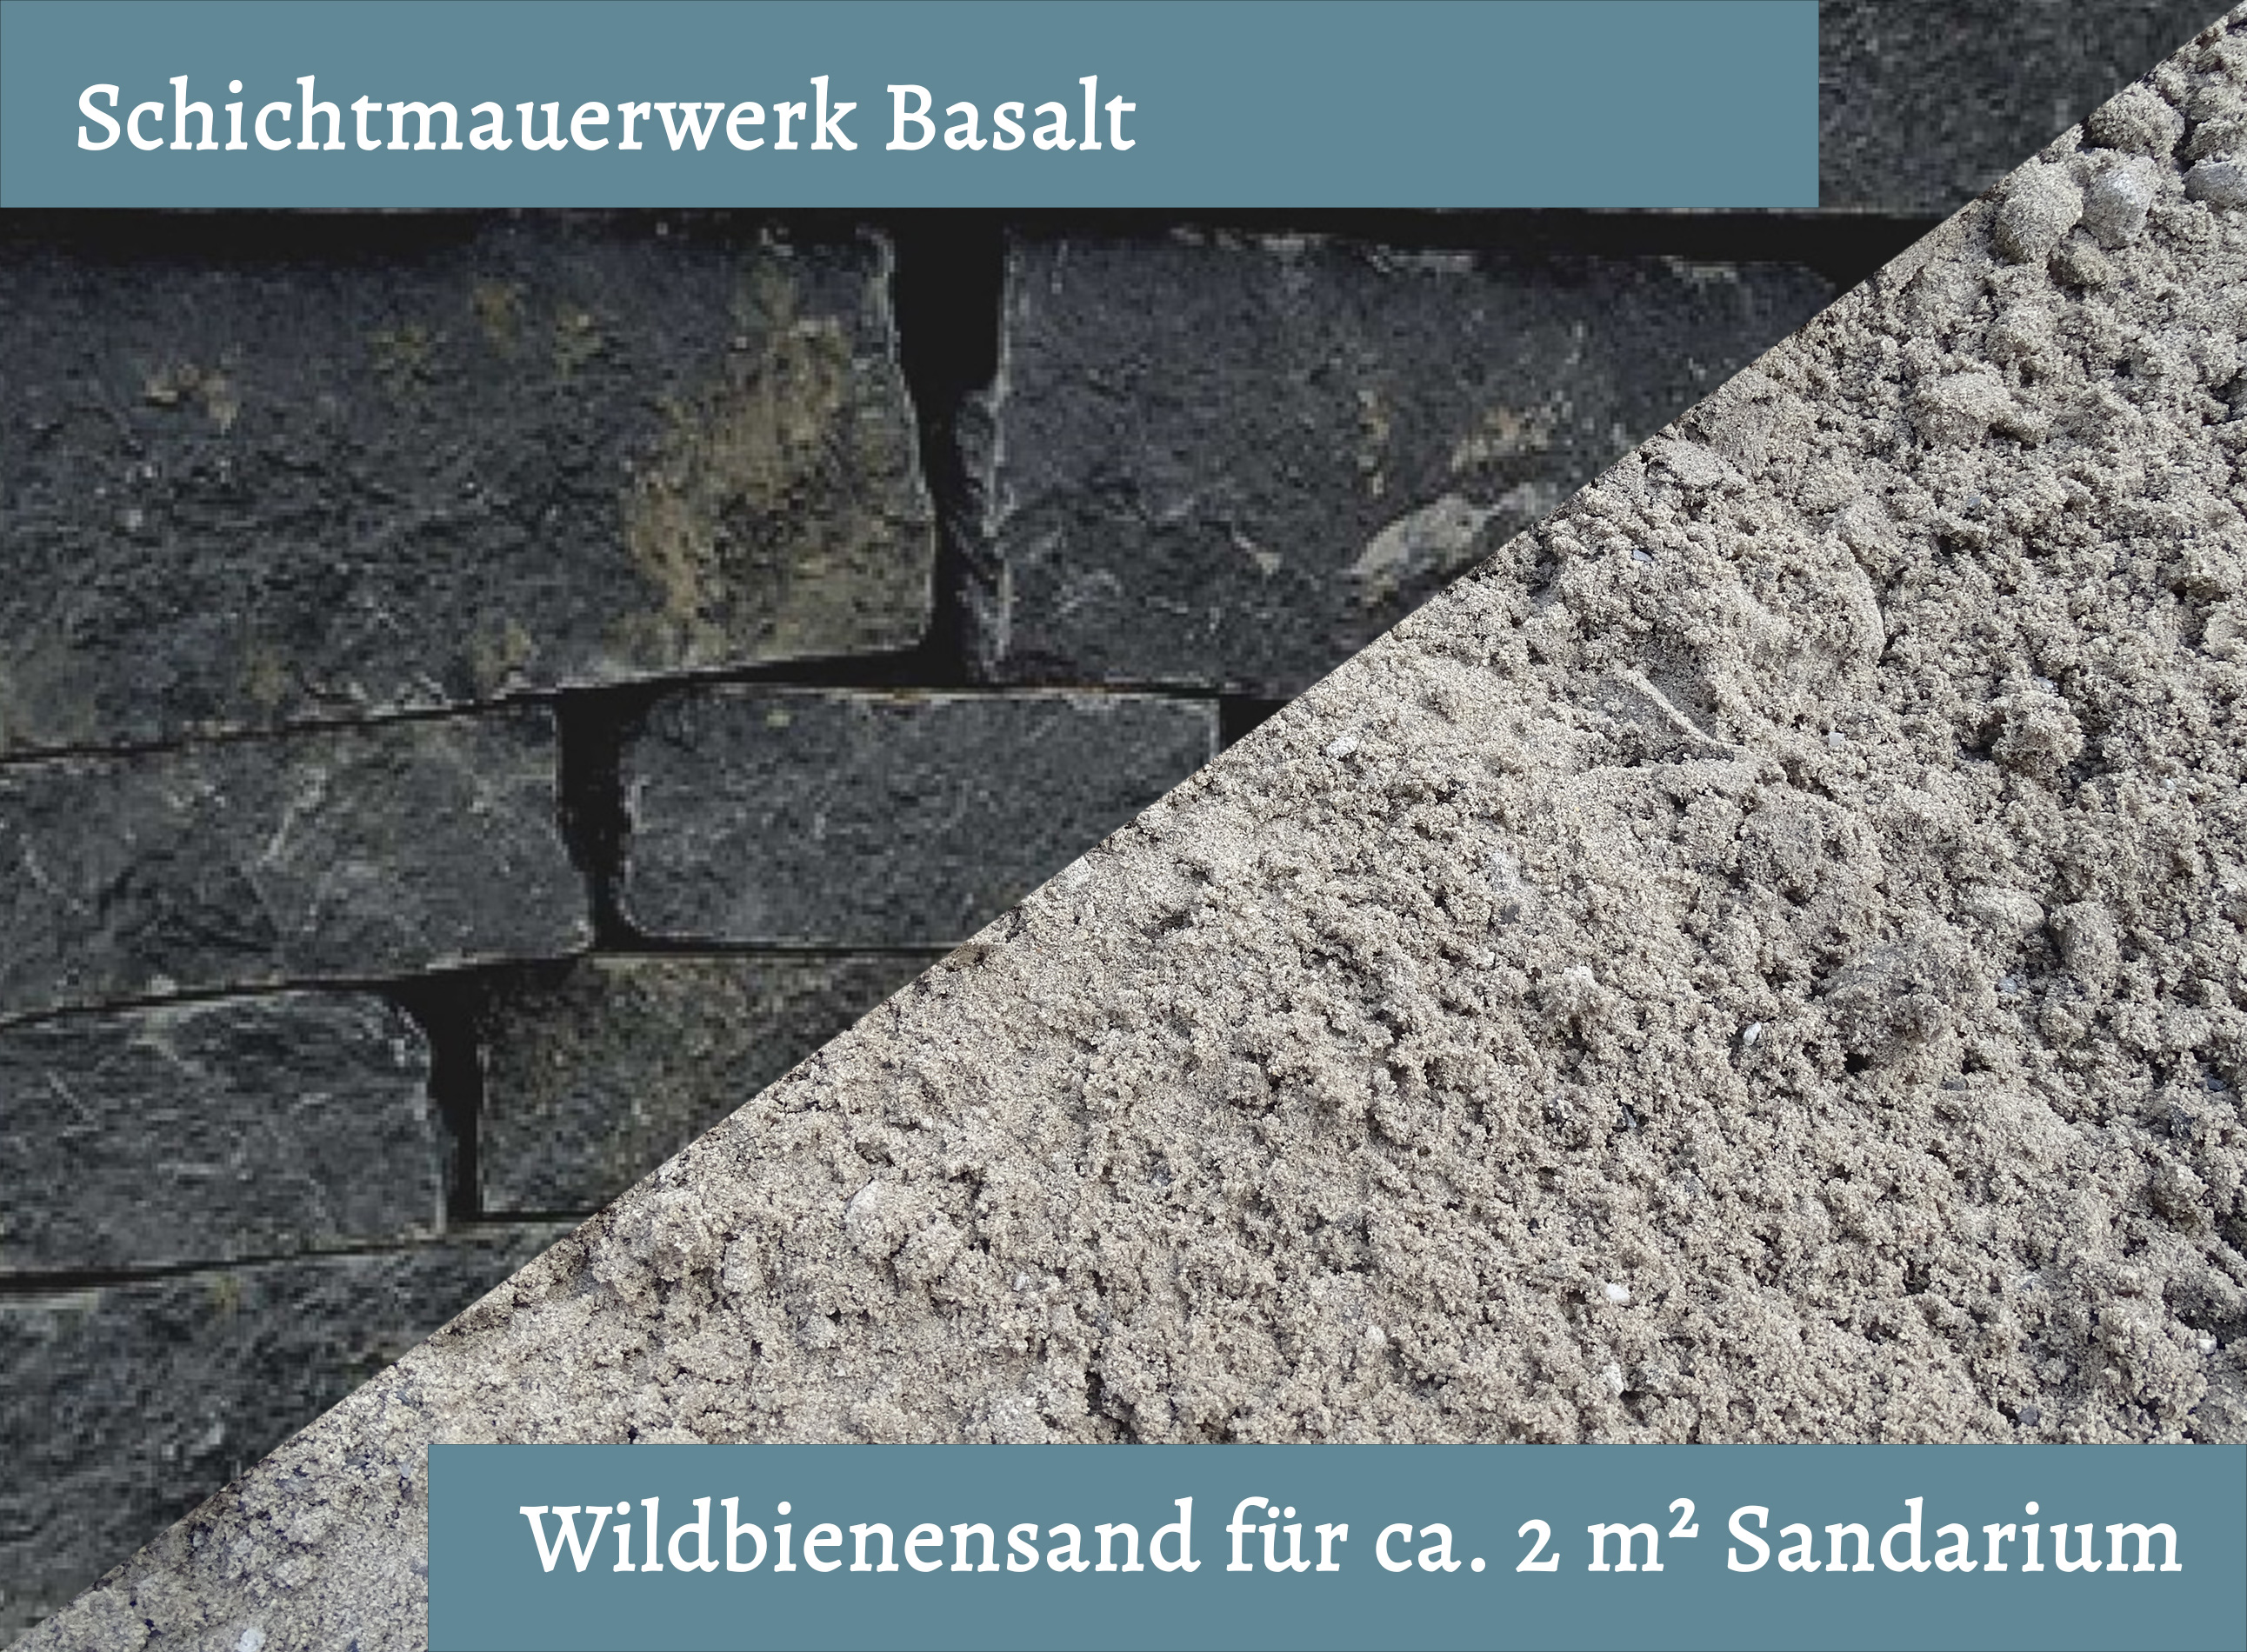 Wildbienensand mit Schichtmauer Basalt für Sandarium 2,0 m²